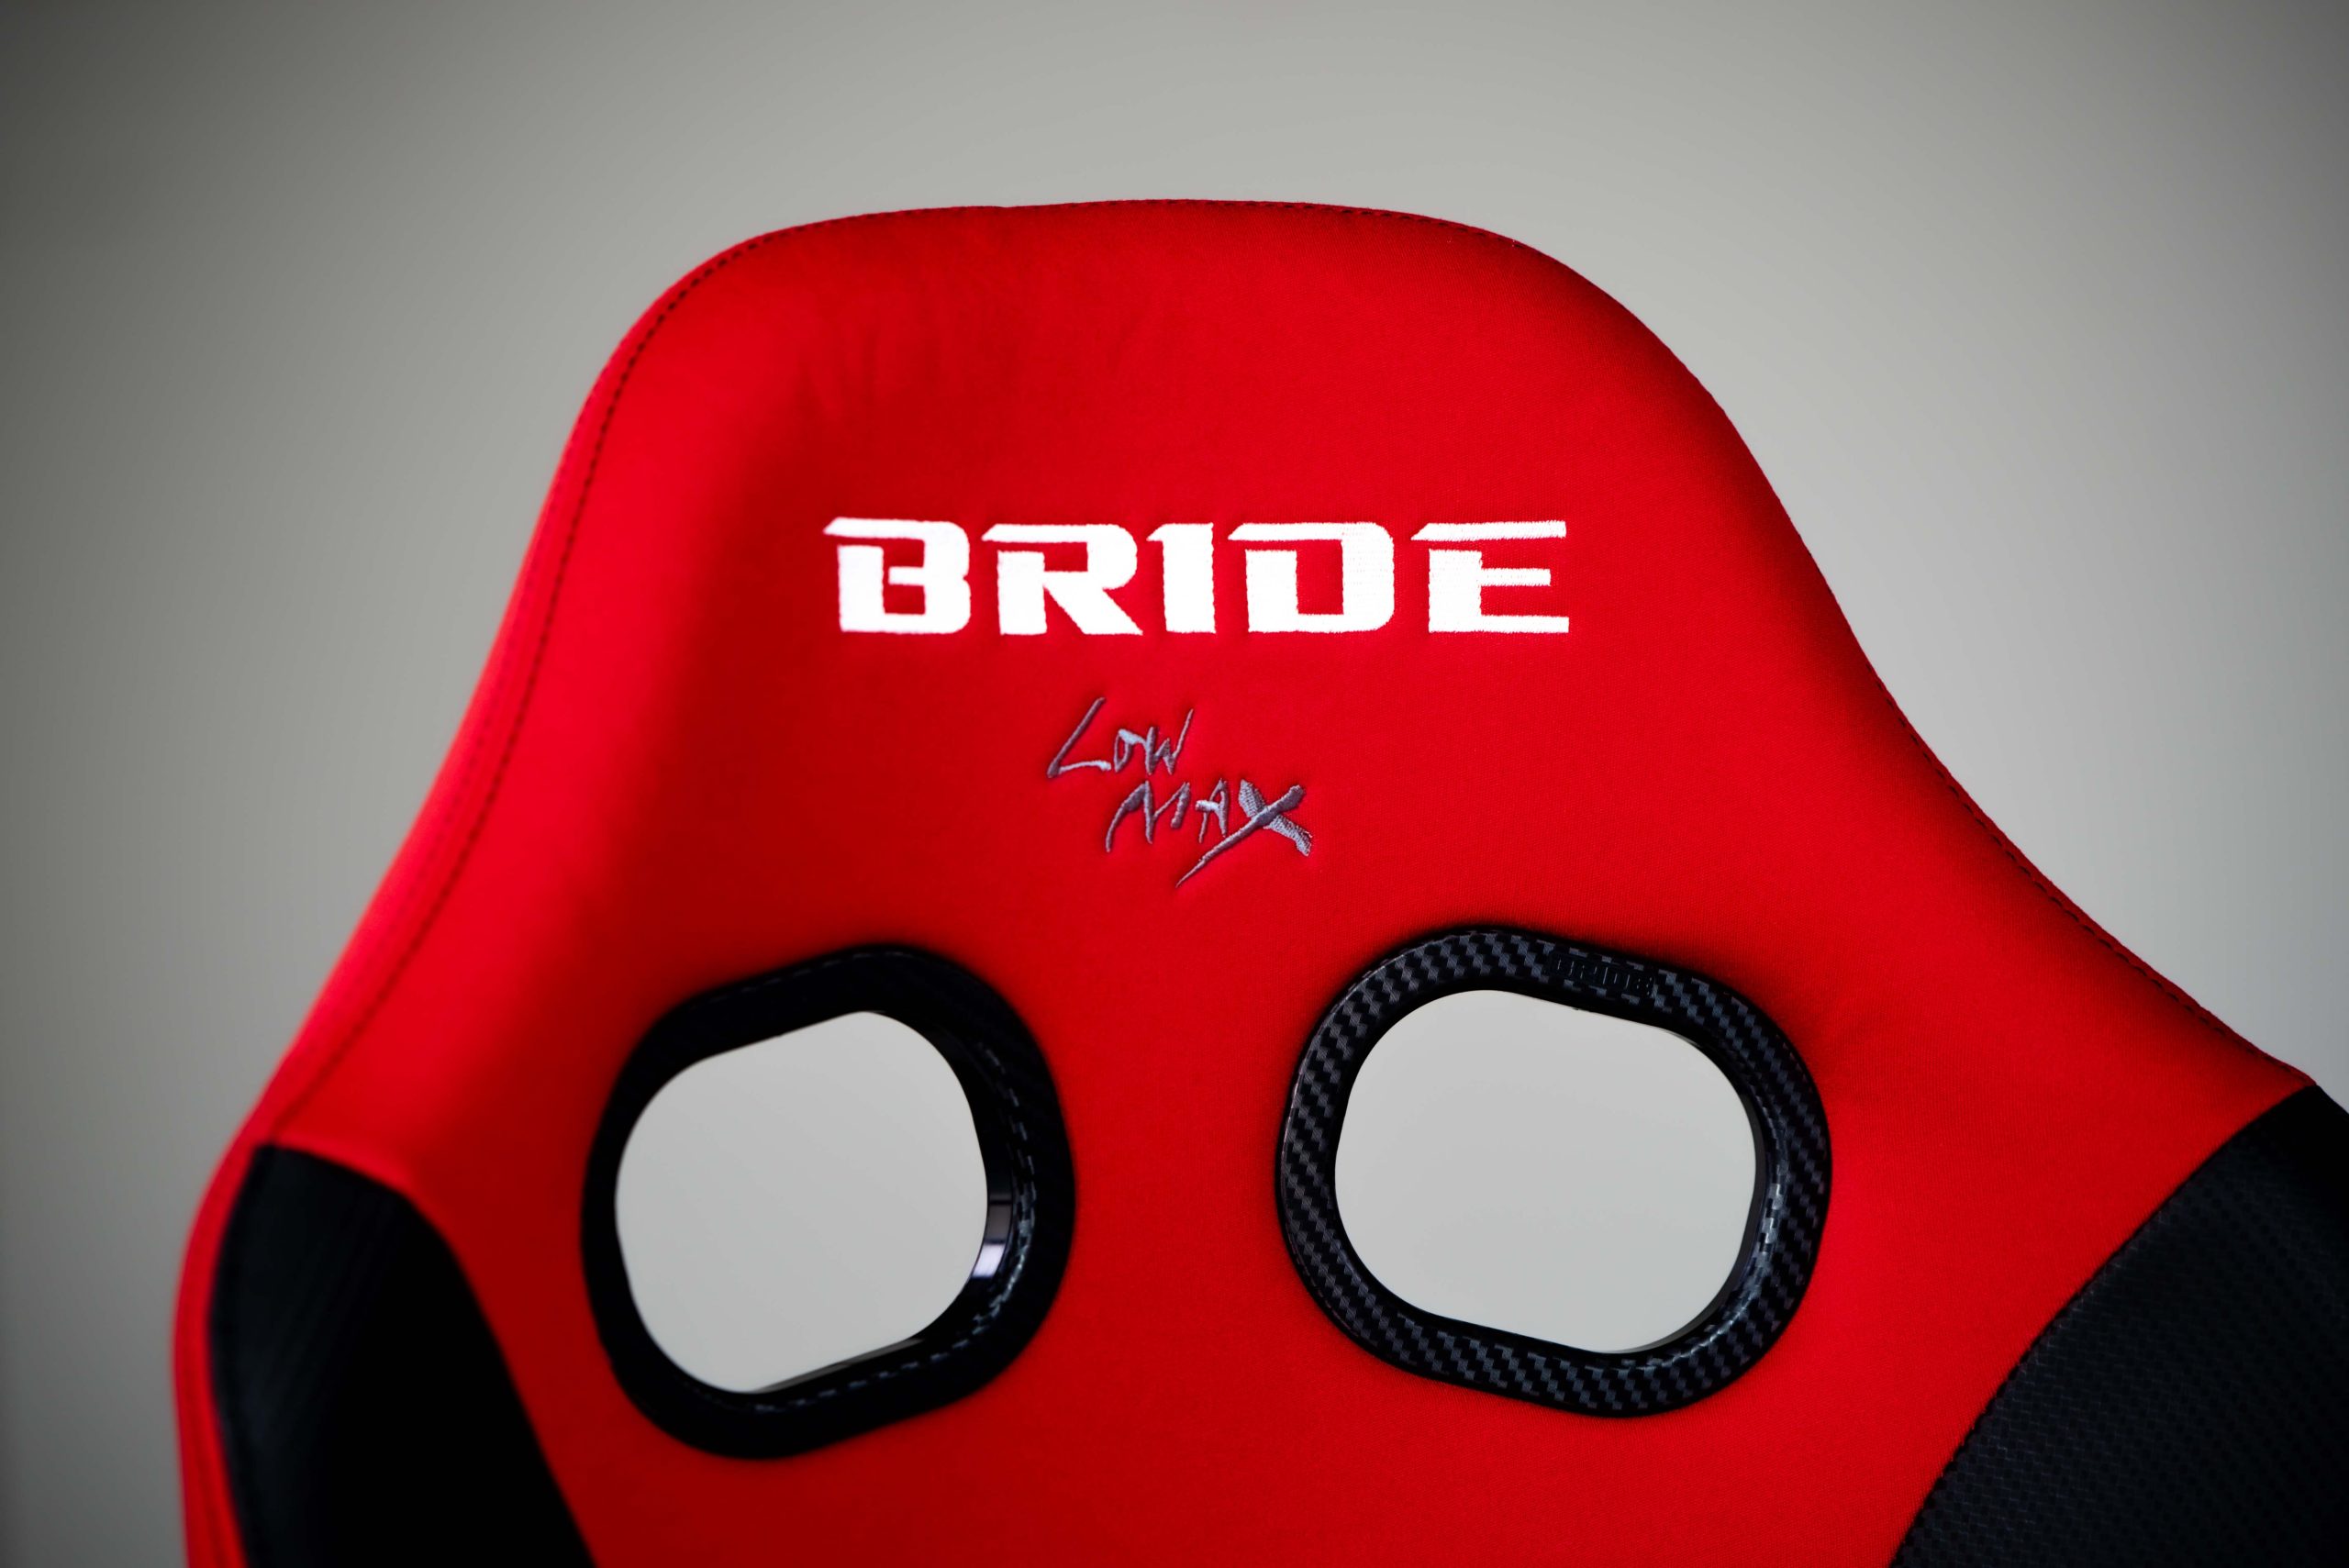 BRIDE ブリッド STRADIAIII スタンダード STRADIA3 スーパーアラミド製ブラックシェル レッド ストラディア3 G71BSR